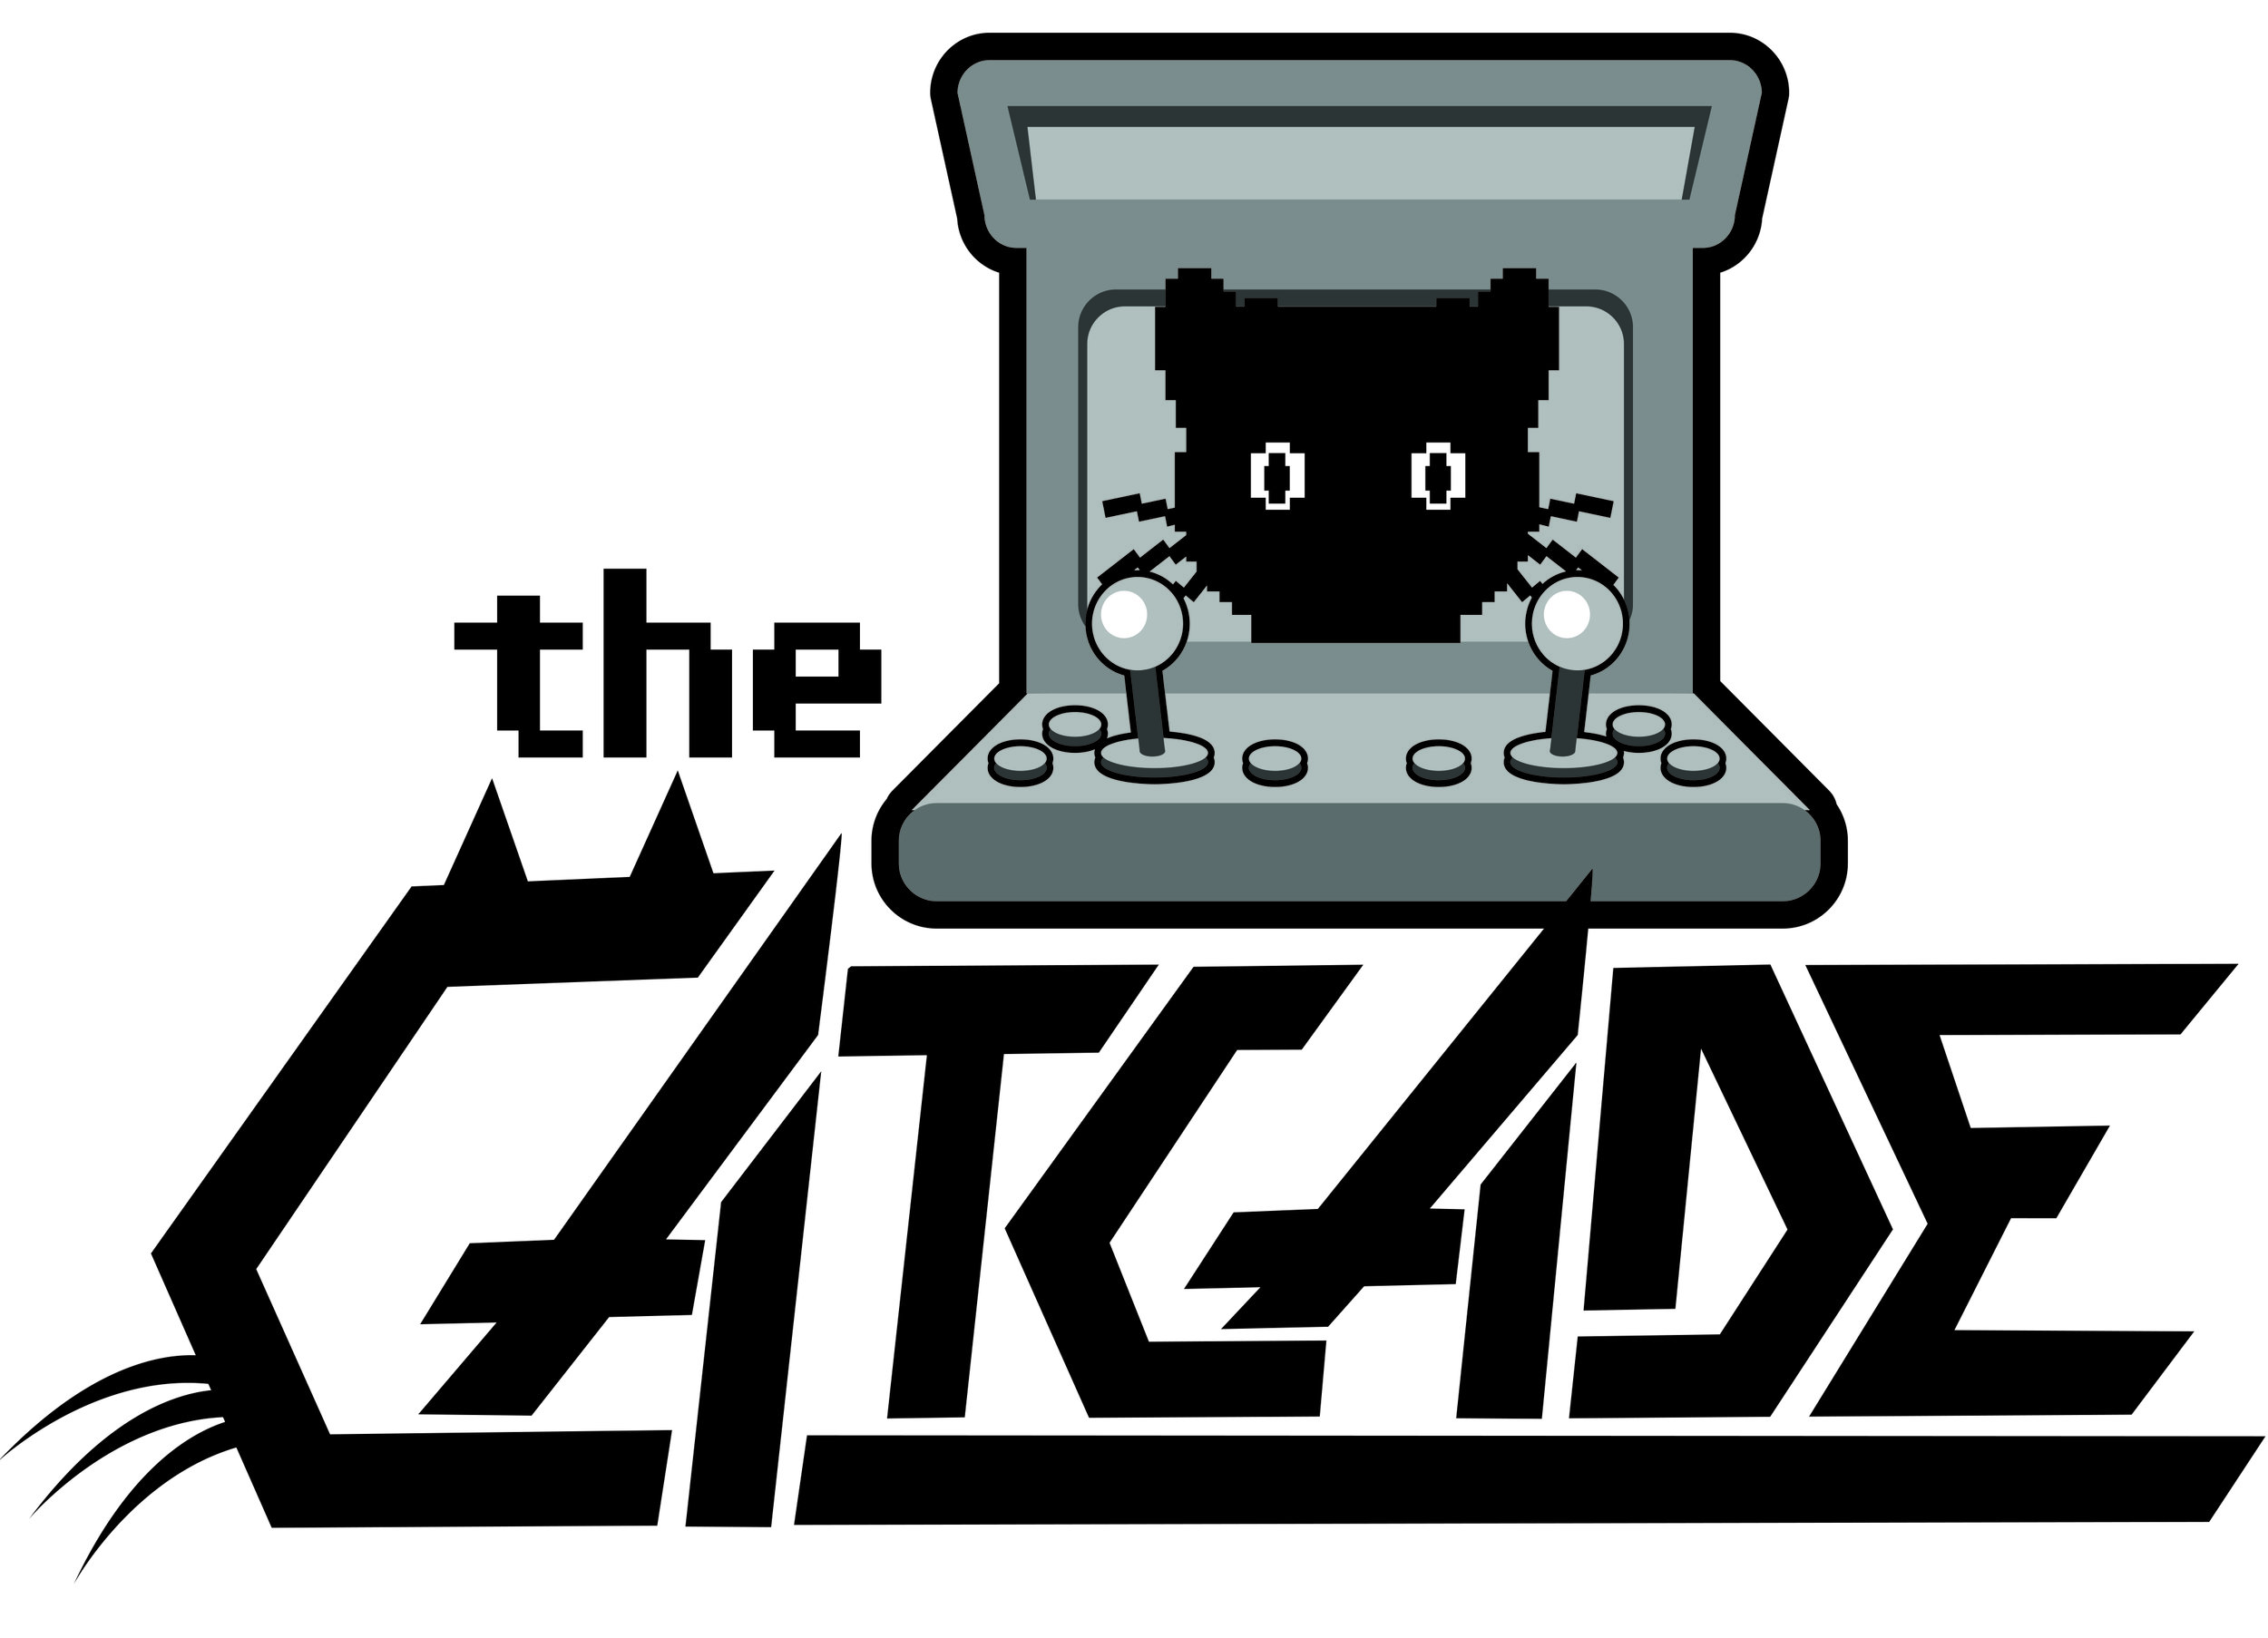 The Catcade